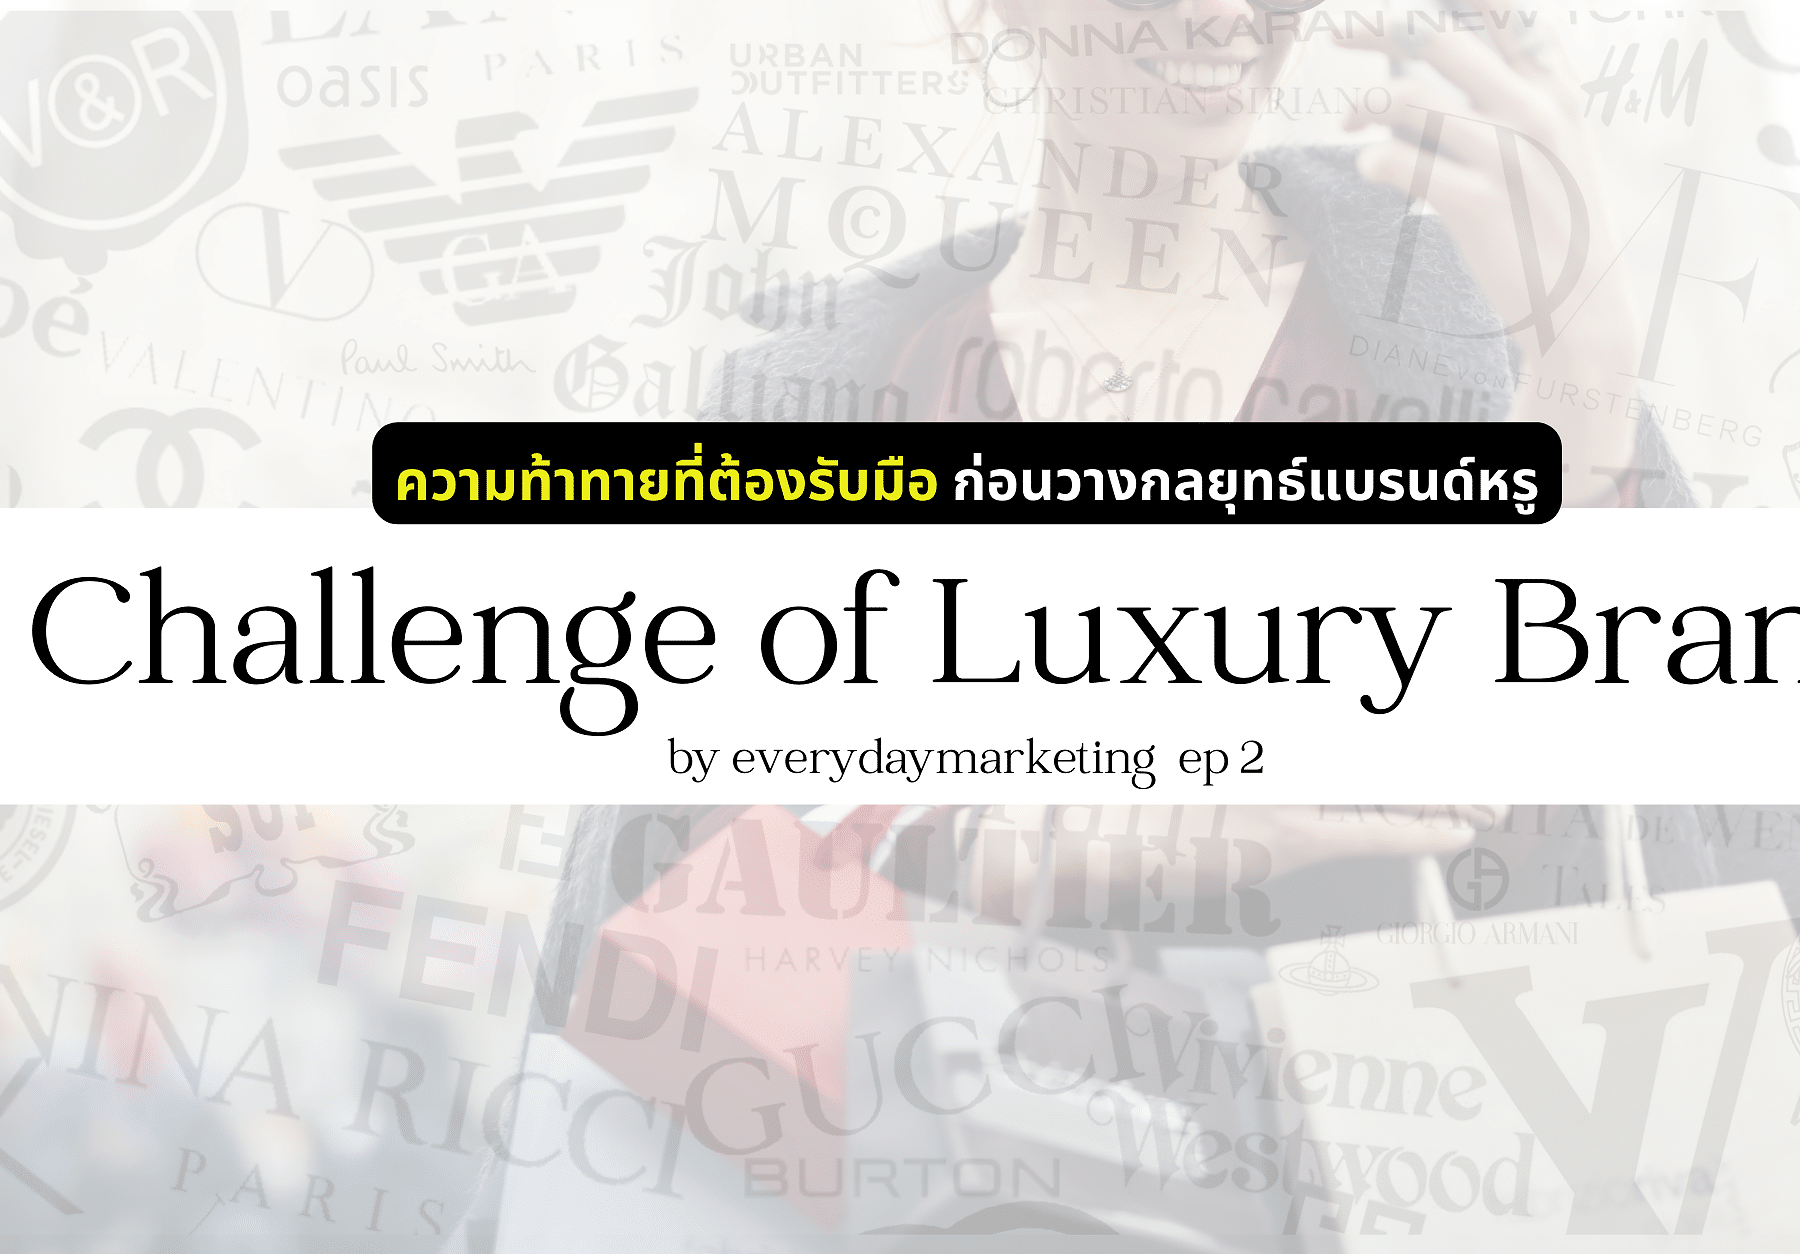 Challenge of Luxury Brand ความท้าทายก่อนวางกลยุทธ์บุกตลาด